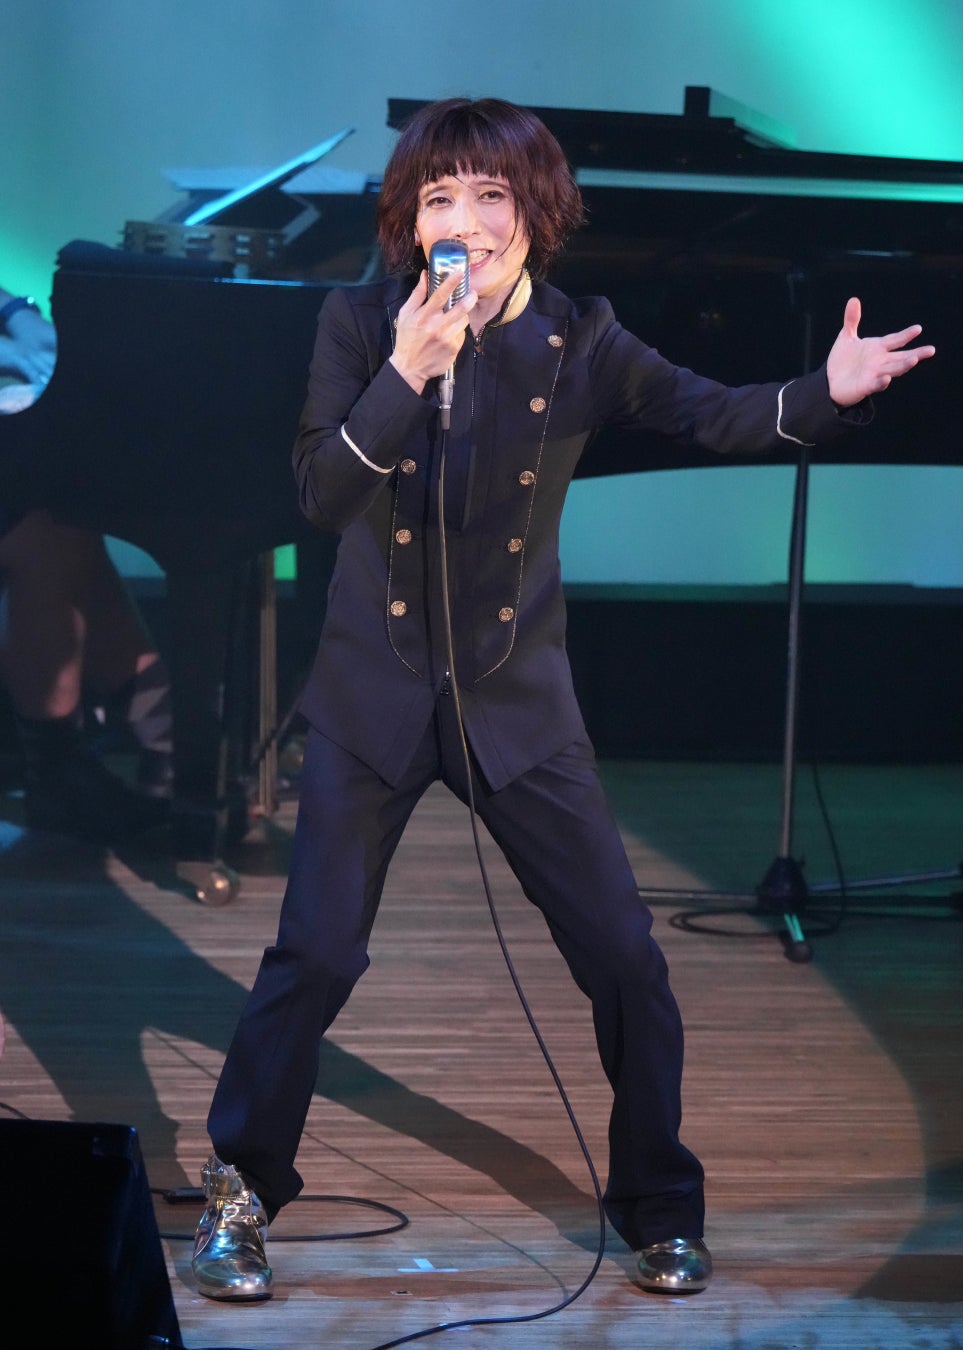 ムード歌謡の貴公子・タブレット純がデビュー20周年記念リサイタル。５月11日に20周年記念シングル「百日紅」発売